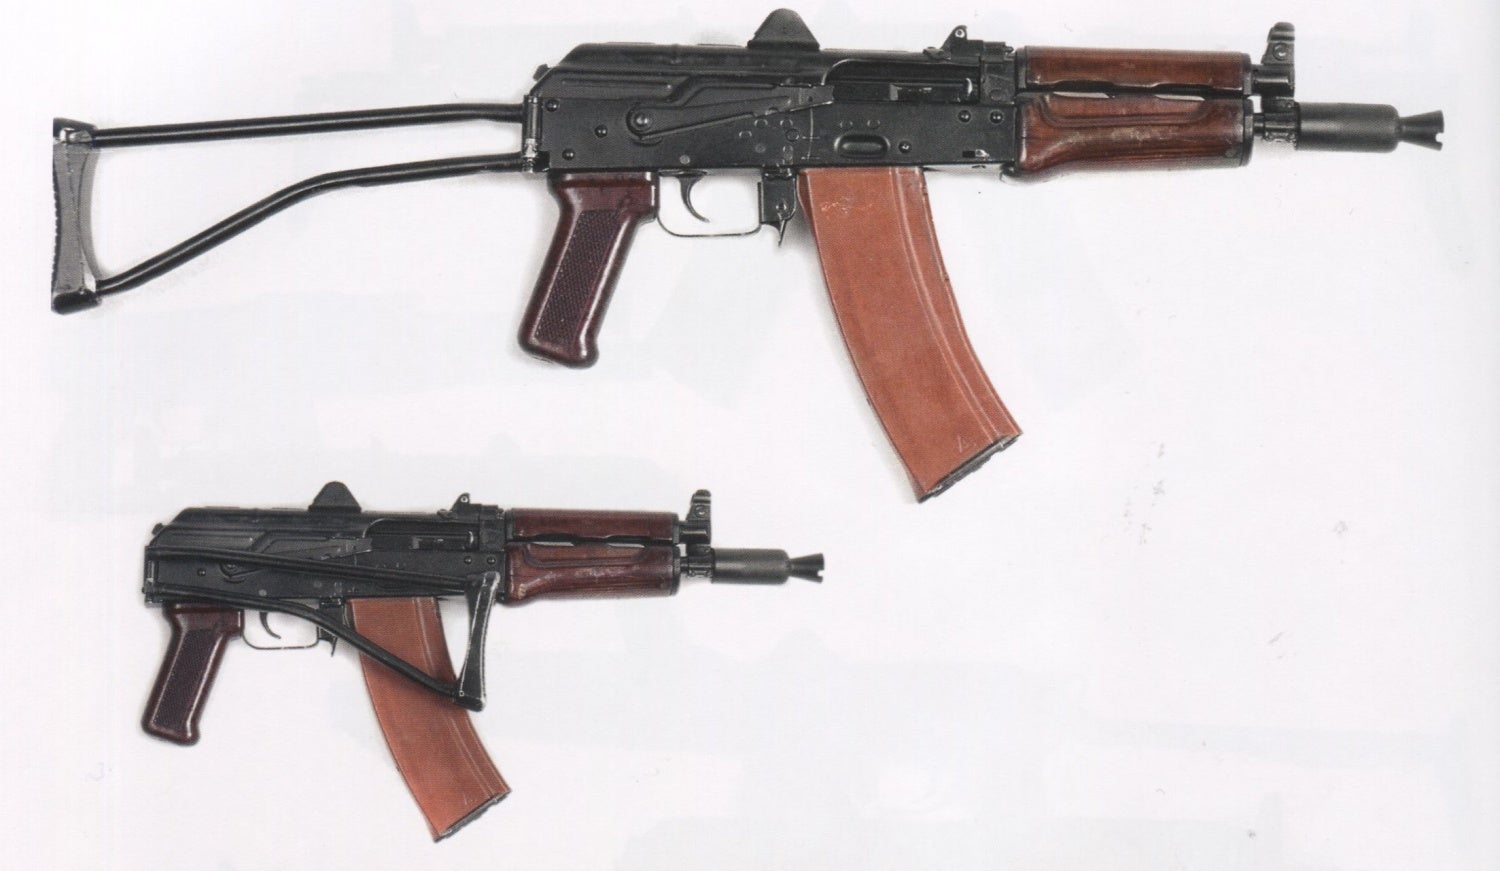 Kalashnikov's winning design.